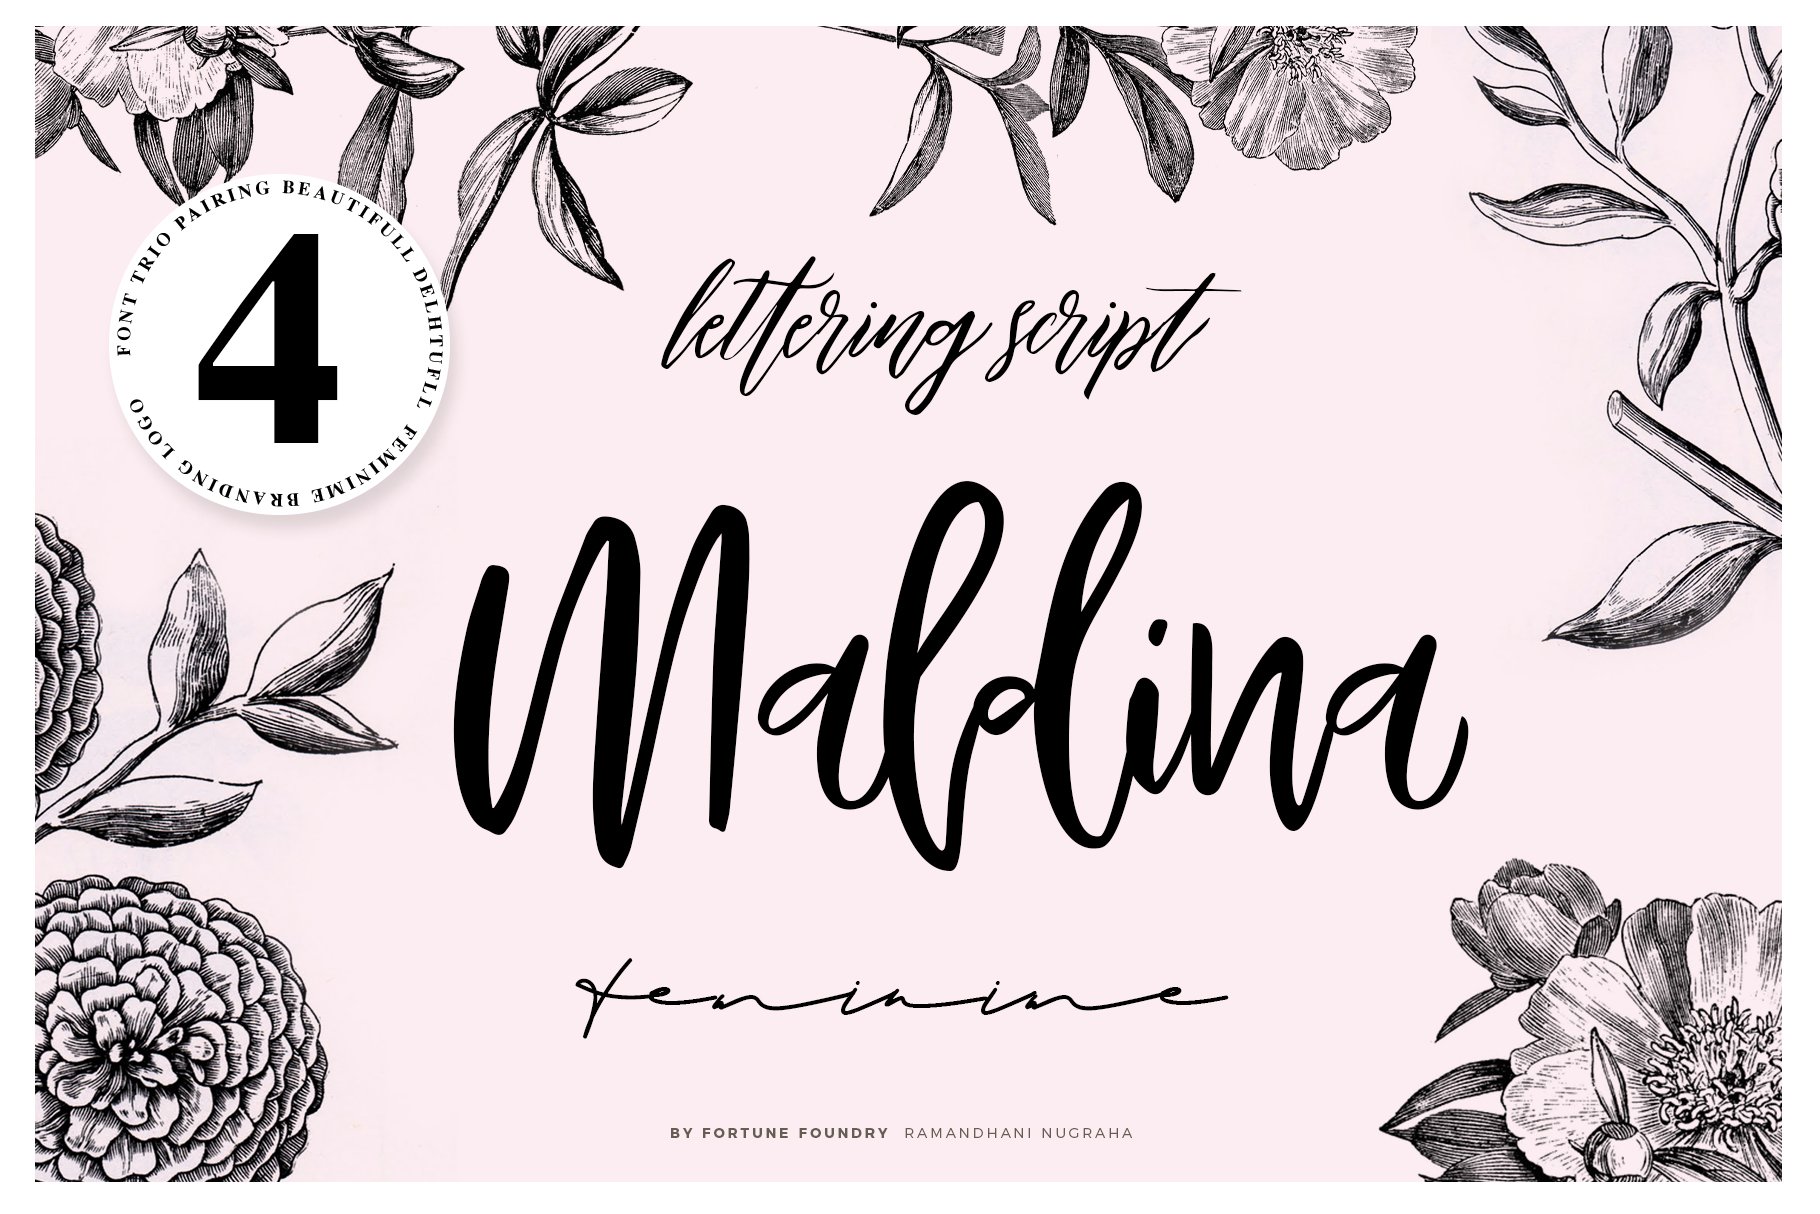 Maldina Feminime (4 fonts) cover image.